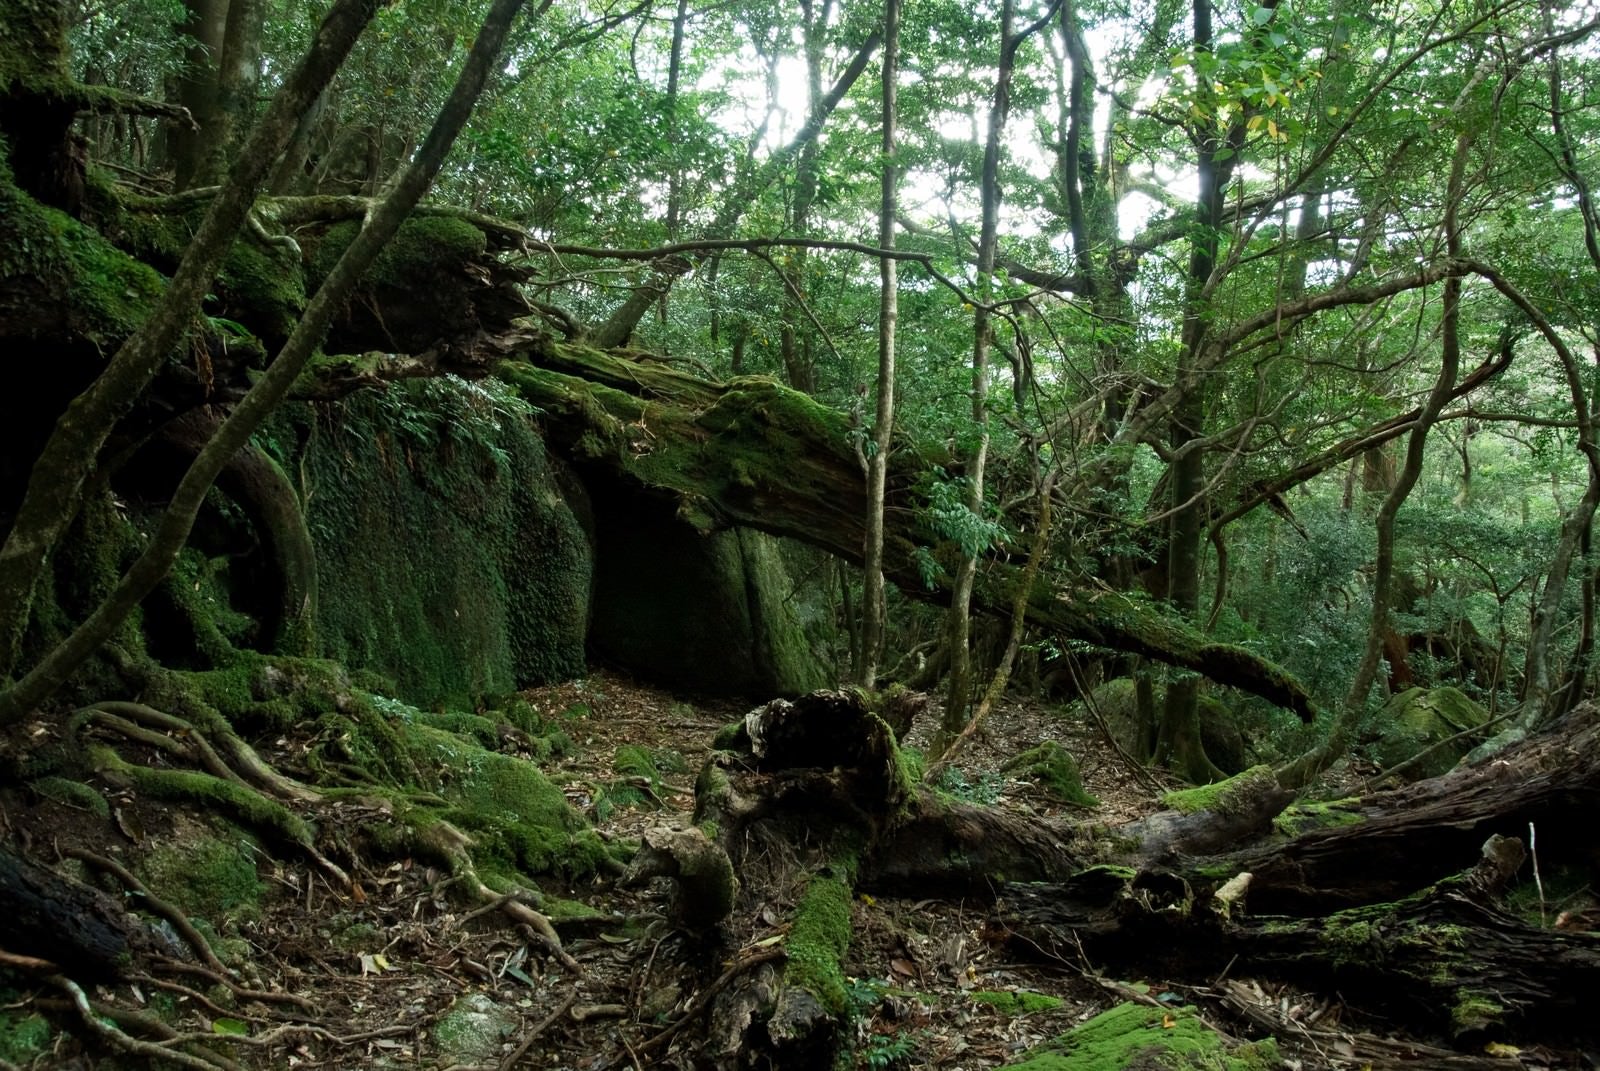 「屋久島の森と折れた木々」の写真